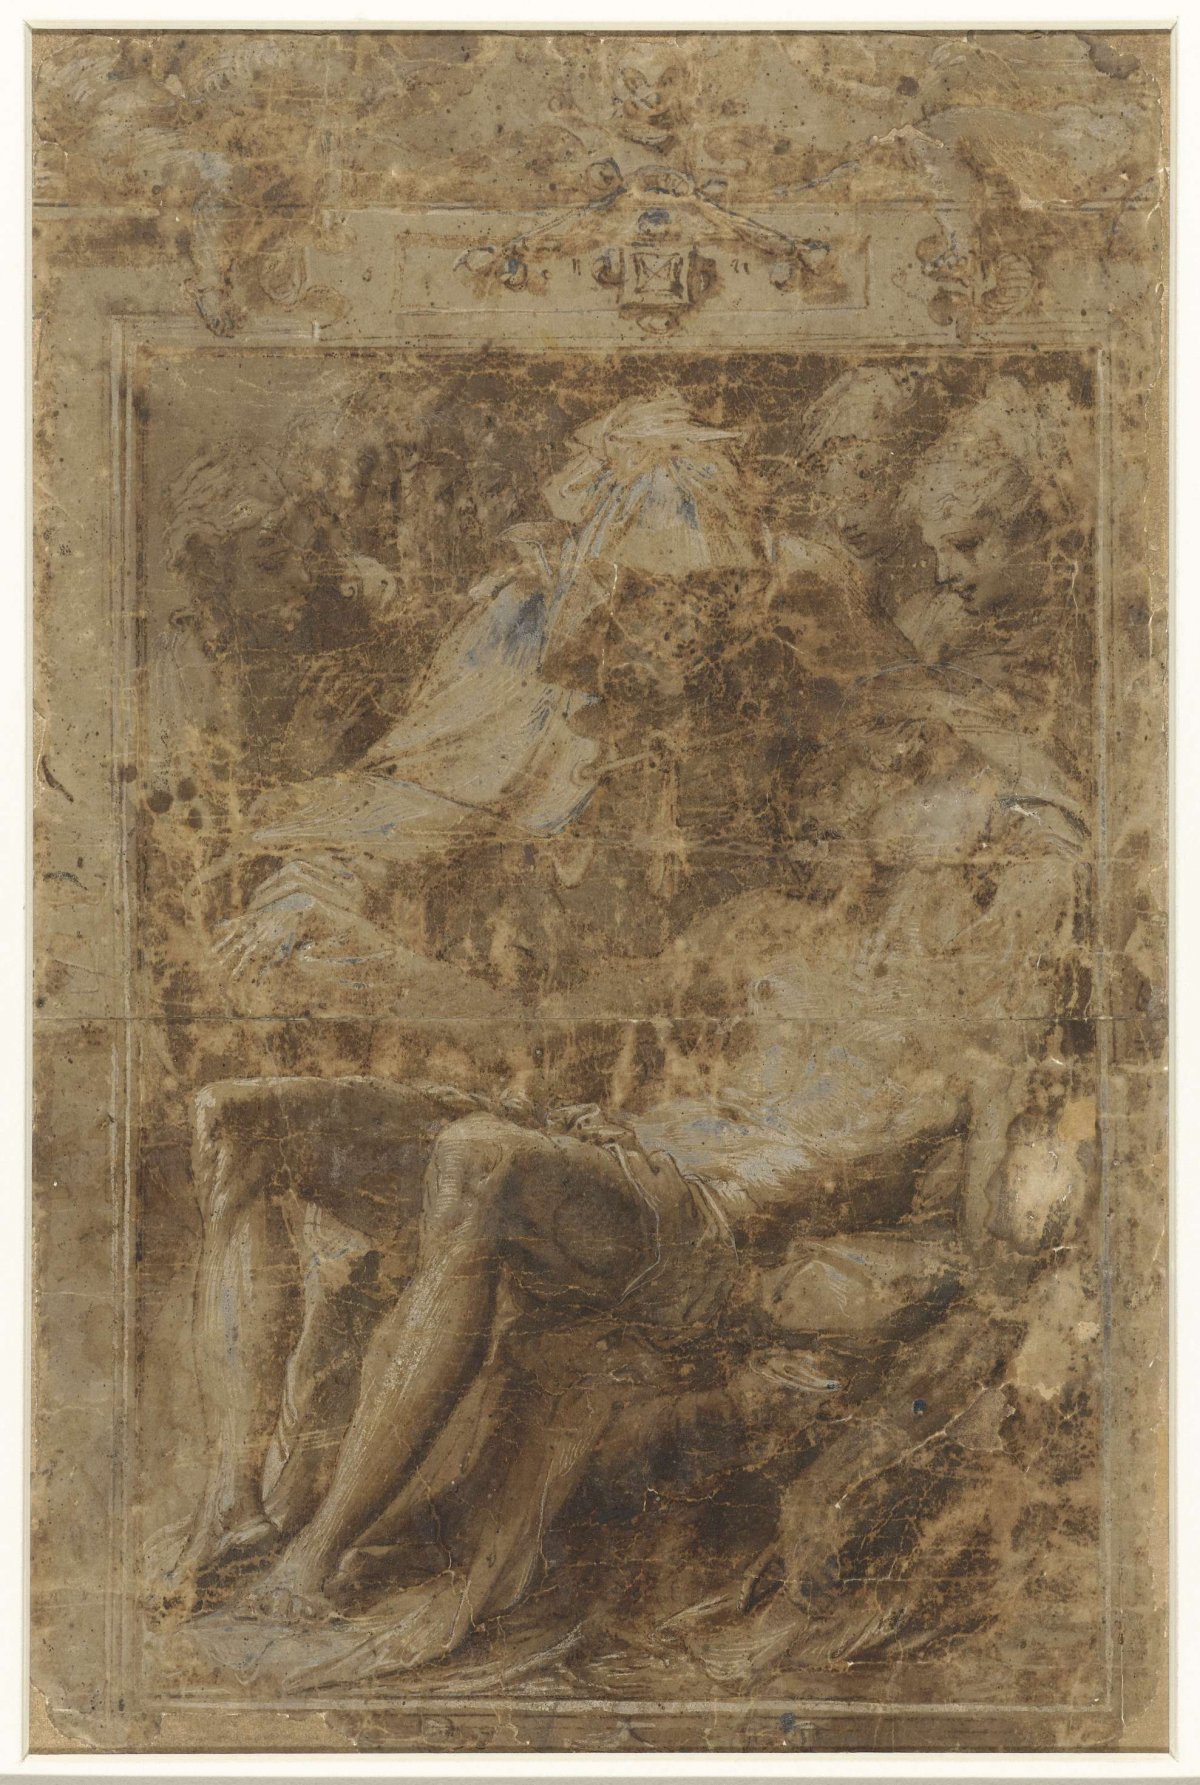 Lamentation by Mary and the women, Perino del Vaga, 1511 - 1547